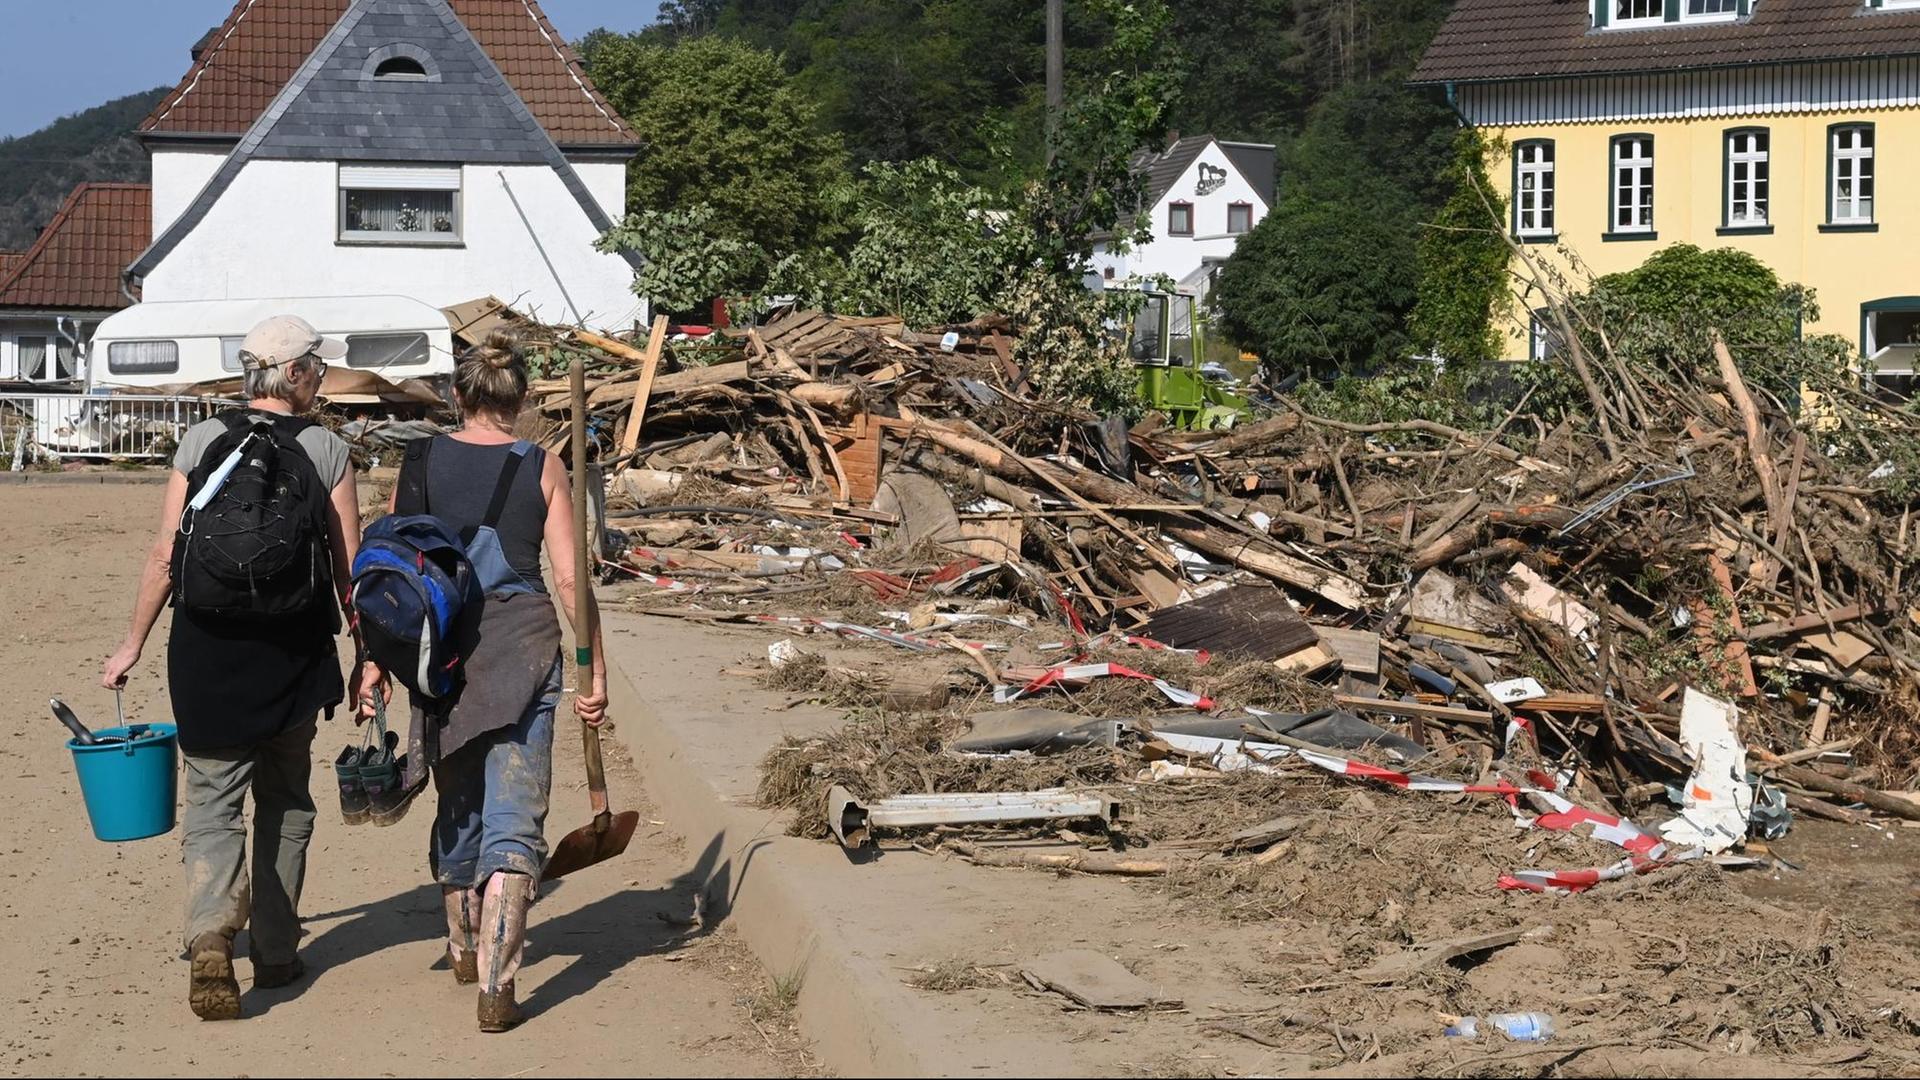 Helfer mit Schaufeln und Eimer auf einer zerstörten Strasse in Kreuzberg nach der Hochwasserkatastrophe. NRW, 20.07.2021.